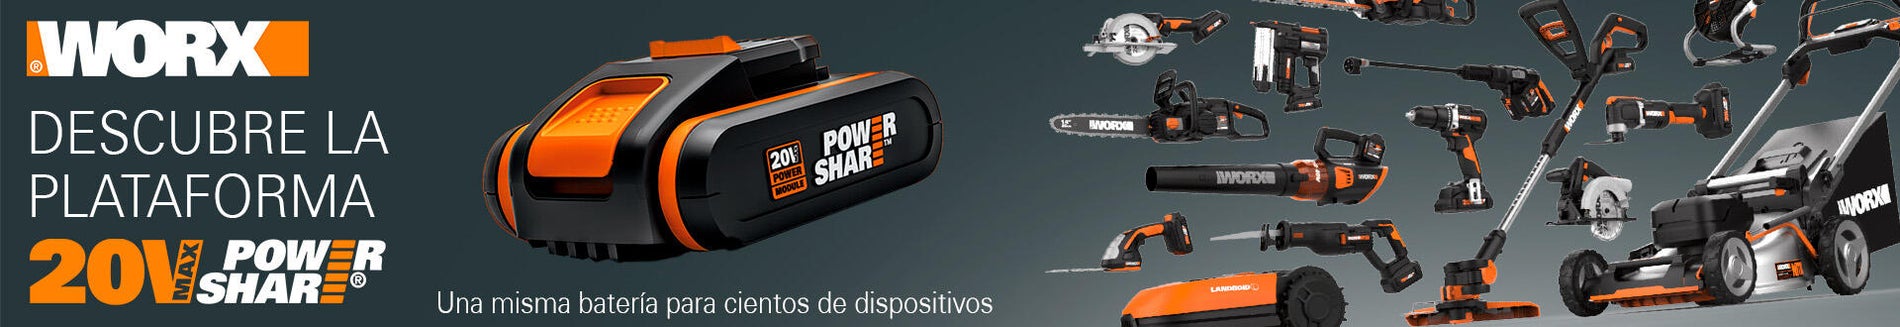 Miniamoladora a batería, Batería de 20V PowerShare